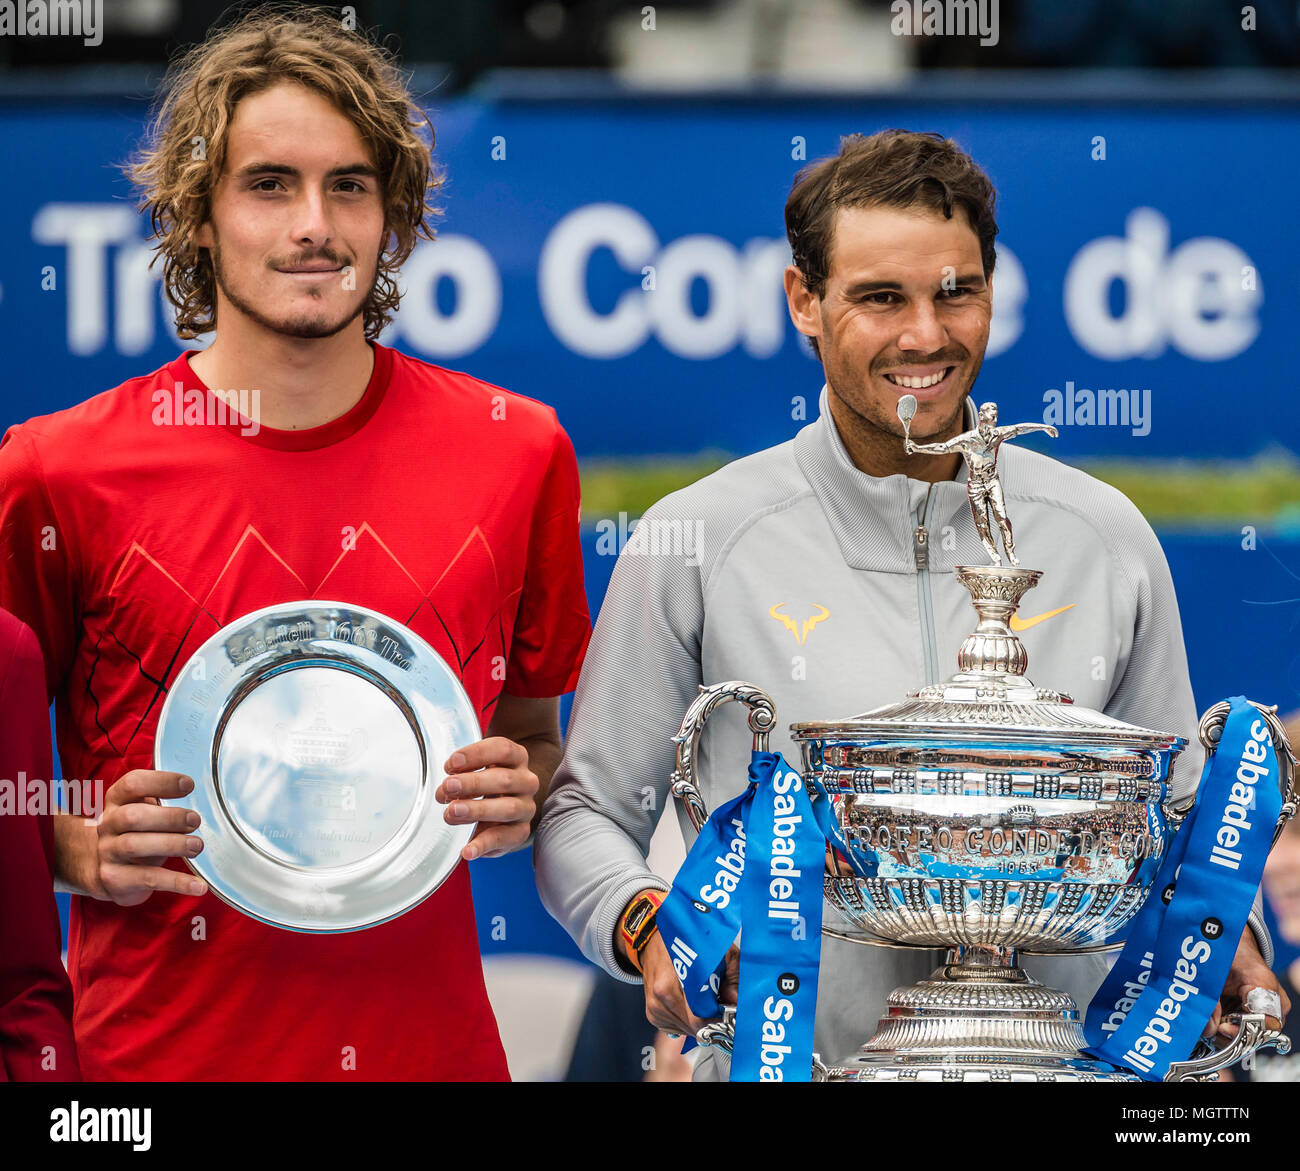 Barcelone, Espagne. 29 avril, 2018 : STEFANOS TSITSIPAS (GRE) et RAFAEL NADAL (ESP) présentent leurs trophées à l'Open de Barcelone Banc Sabadell' après leur finale. Nadal a gagné 6:2, 6:1 Banque D'Images